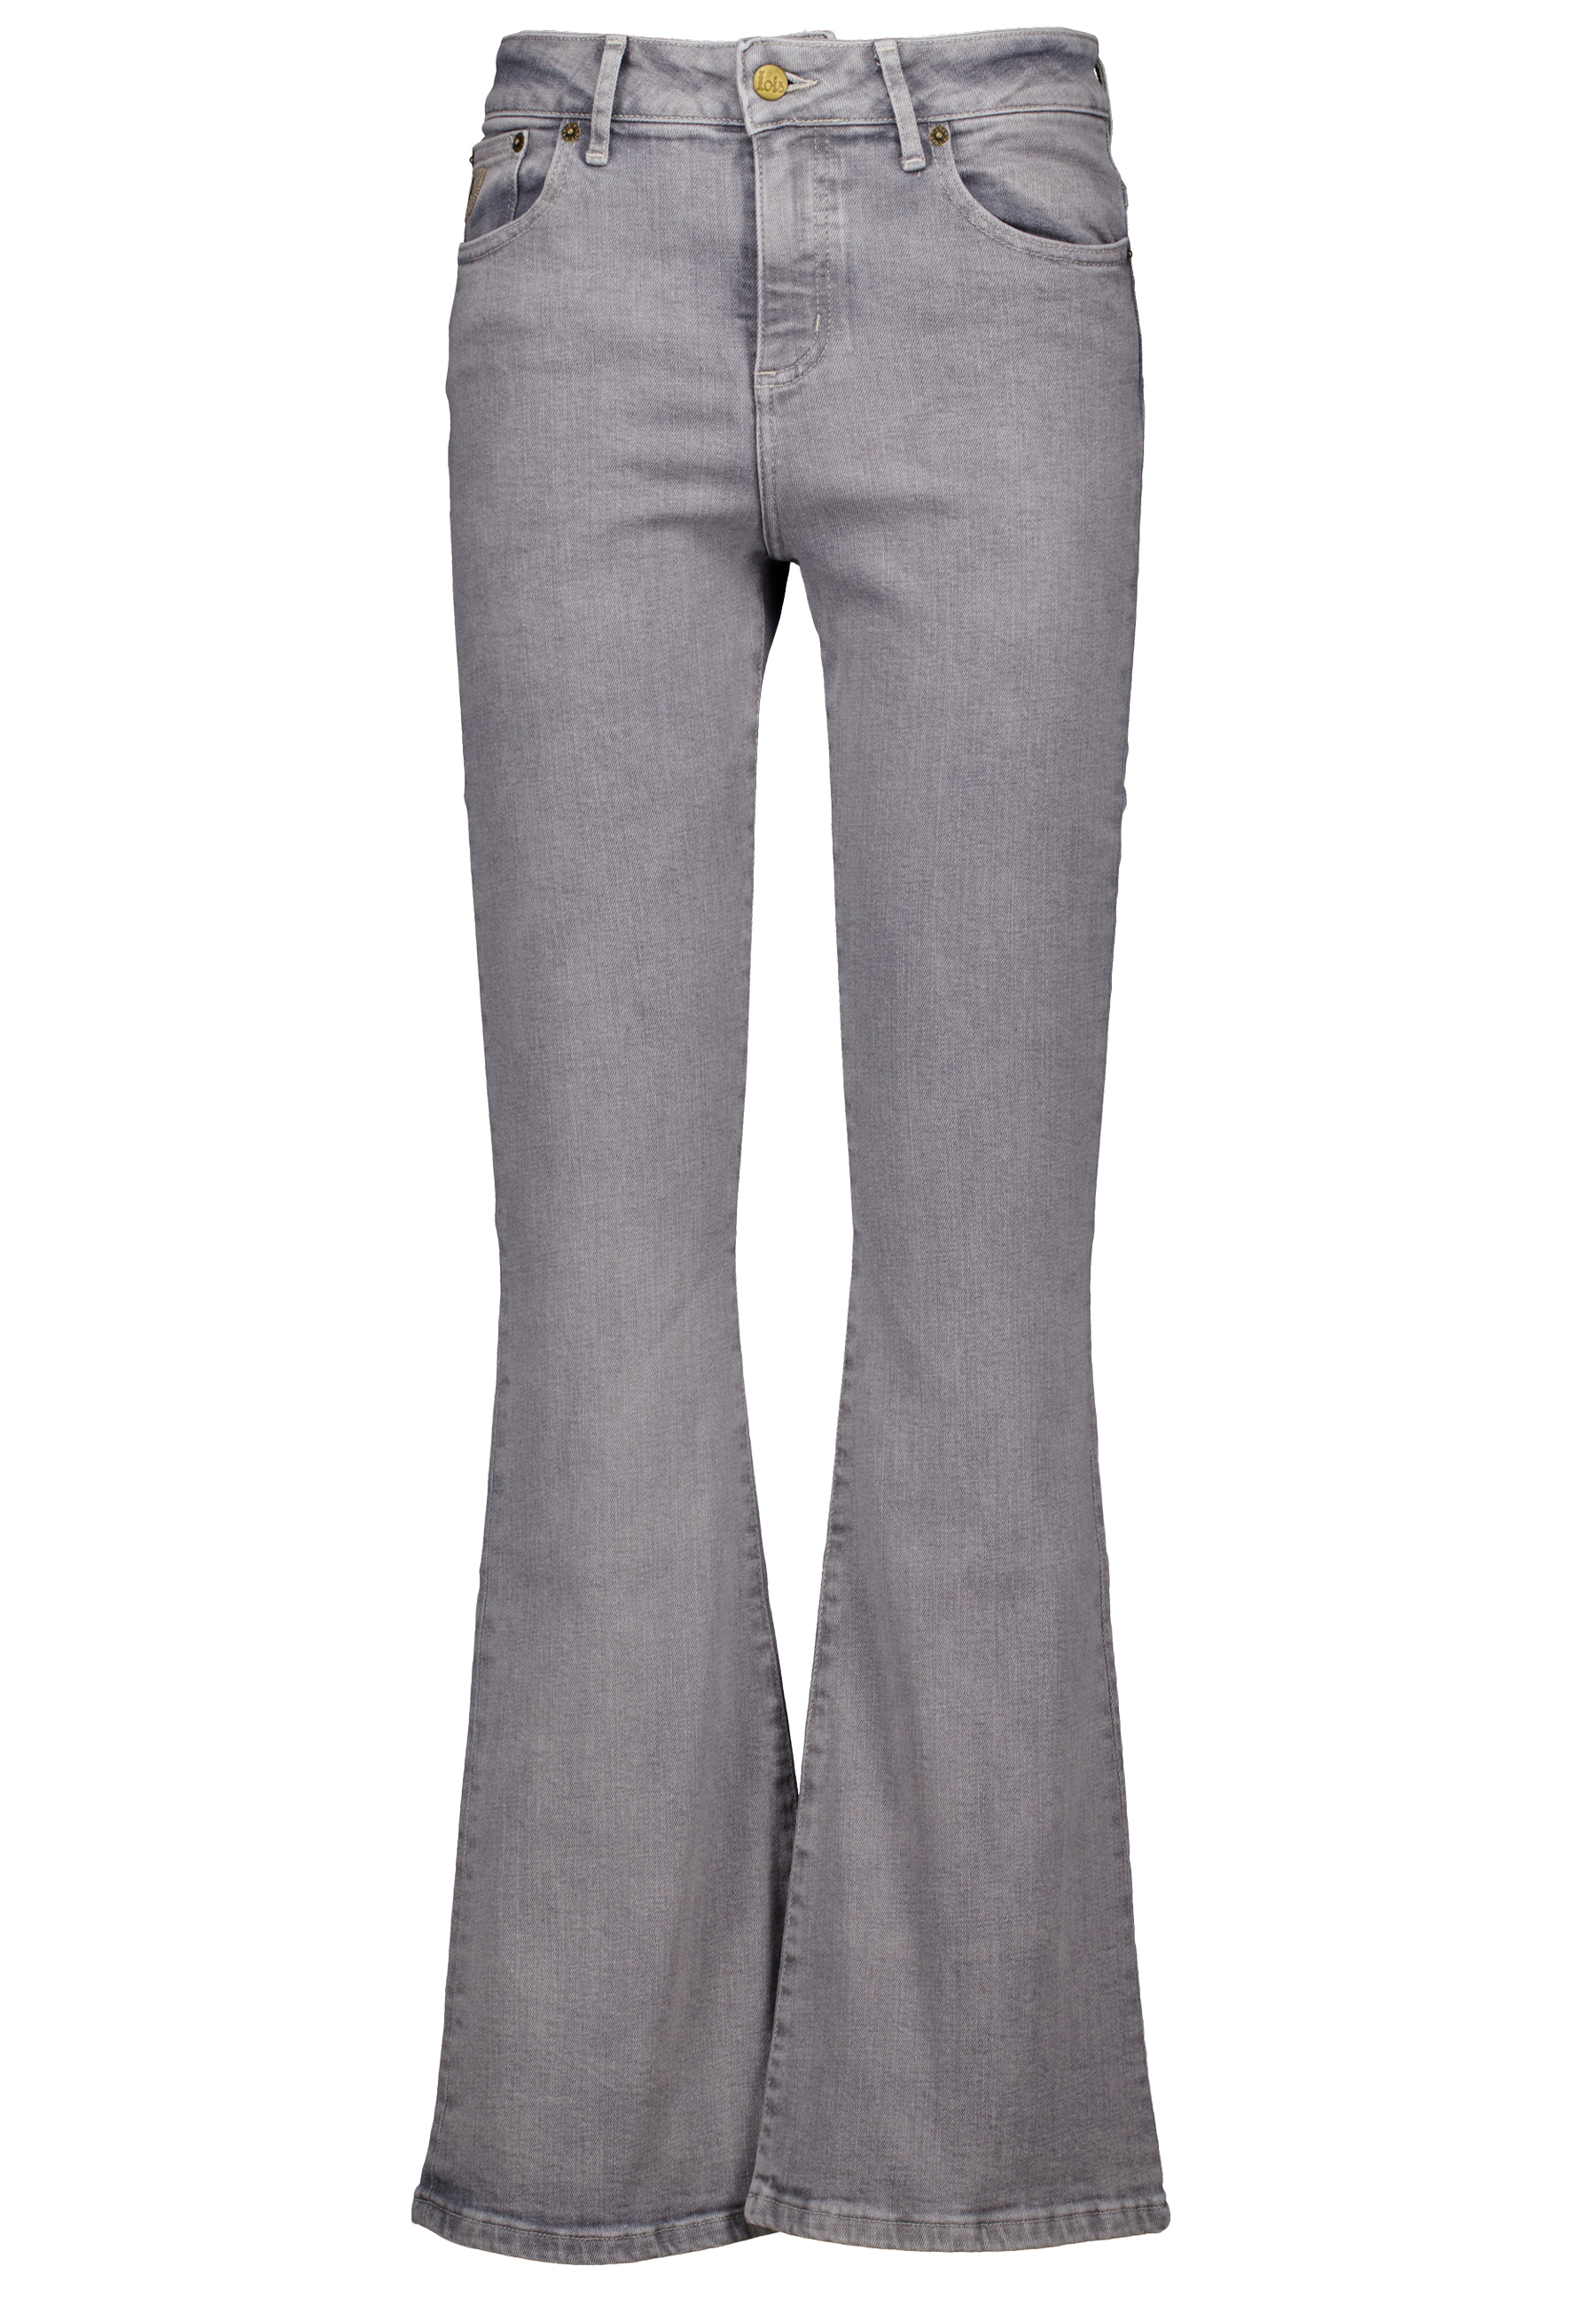 Jeans Grijs Raval 16 jeans grijs